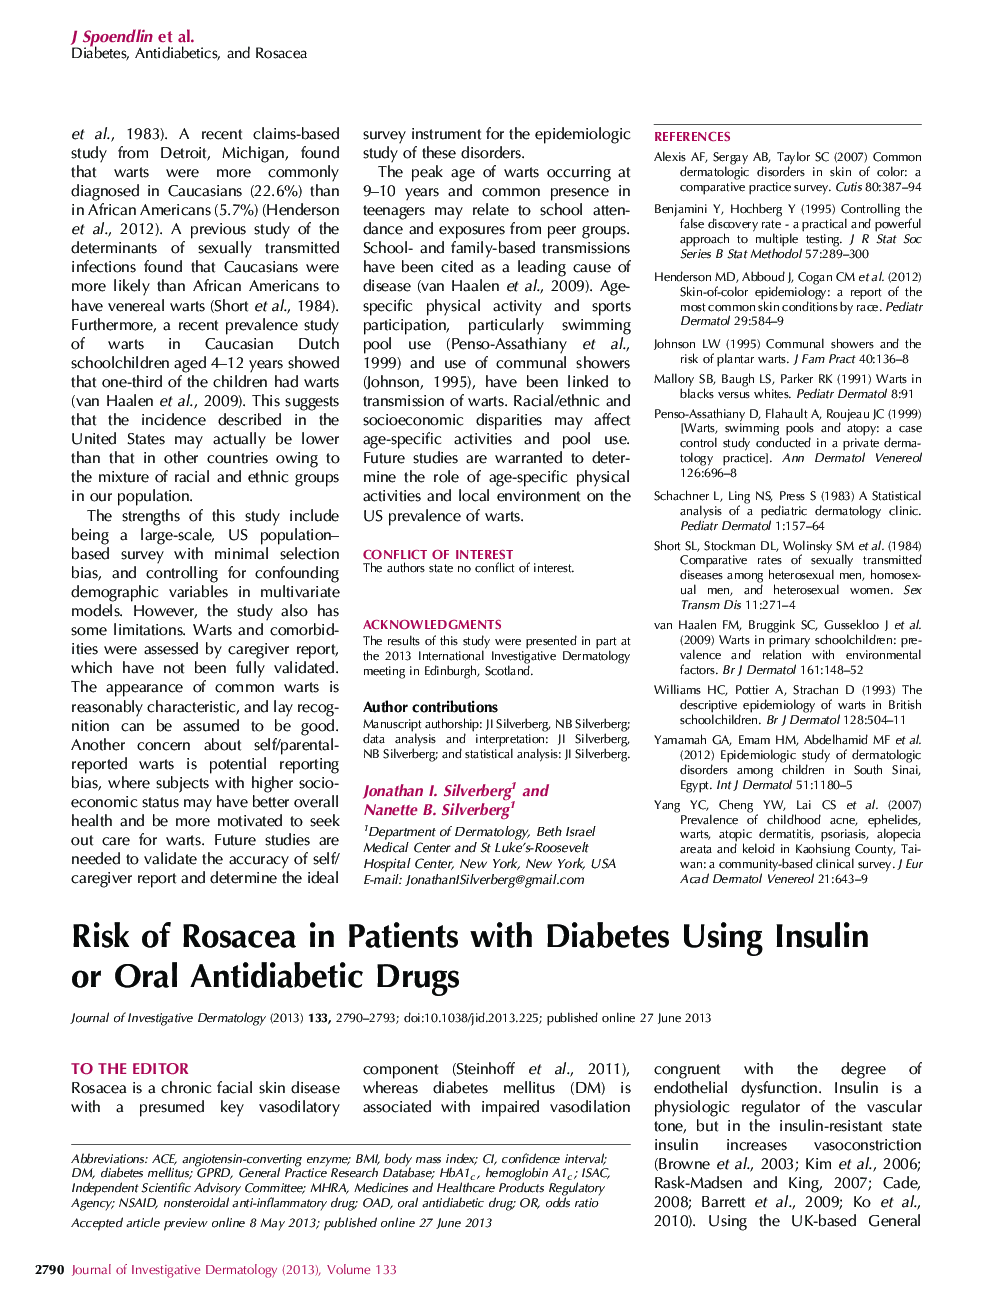 خطر روئسا سای در بیماران دیابتی با استفاده از داروهای ضد انعقاد انسولین یا خوراکی 